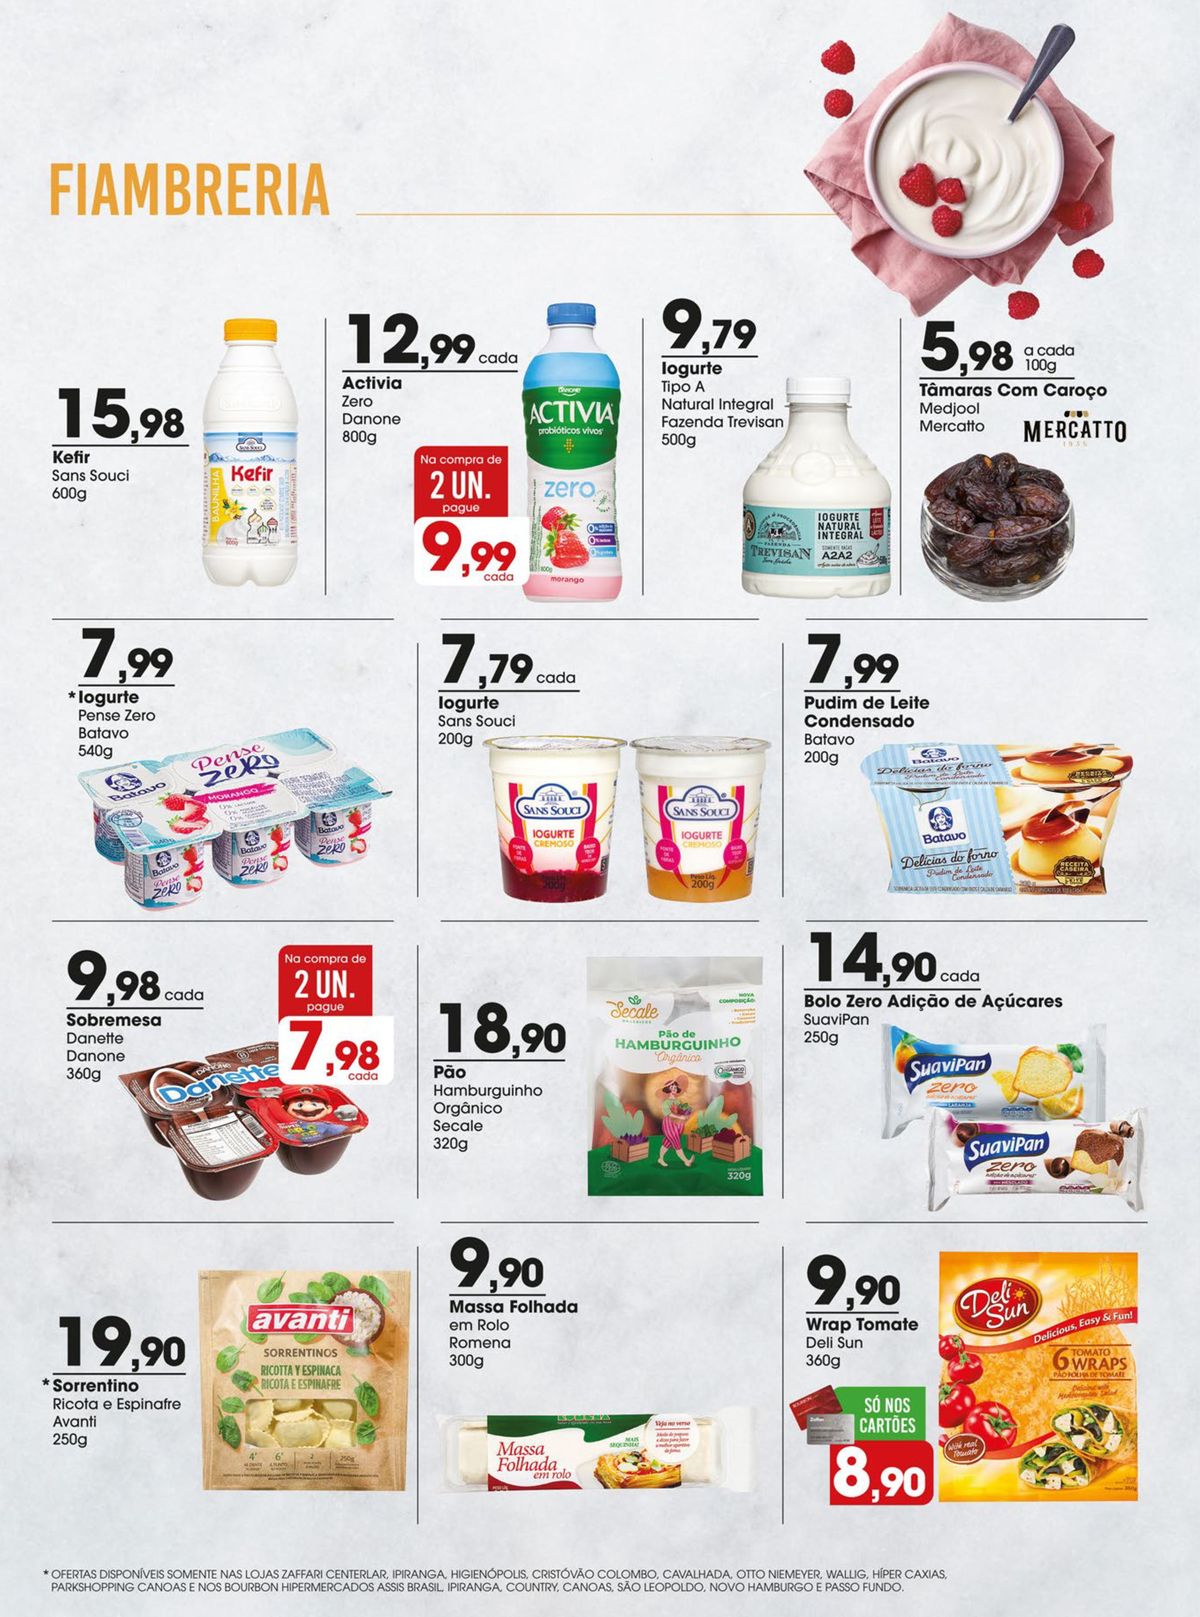 Promoções em FIAMBRERIA e laticínios na Zaffari Supermercados